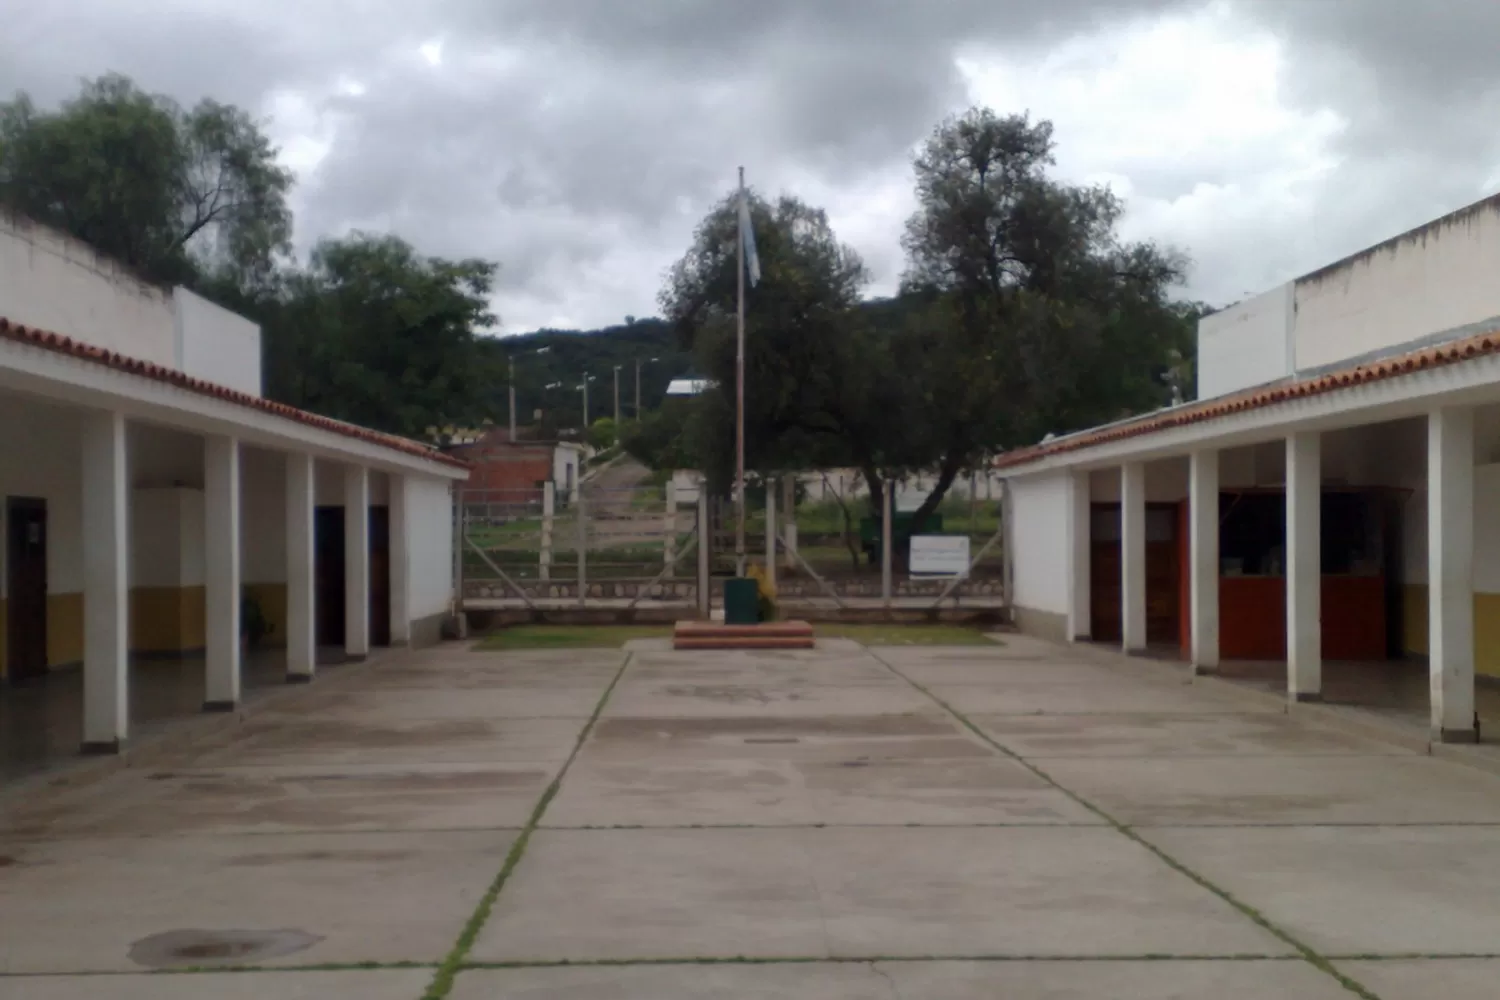 La violación ocurrió en el Colegio Agrotécnica Soberanía Nacional de Guachipas